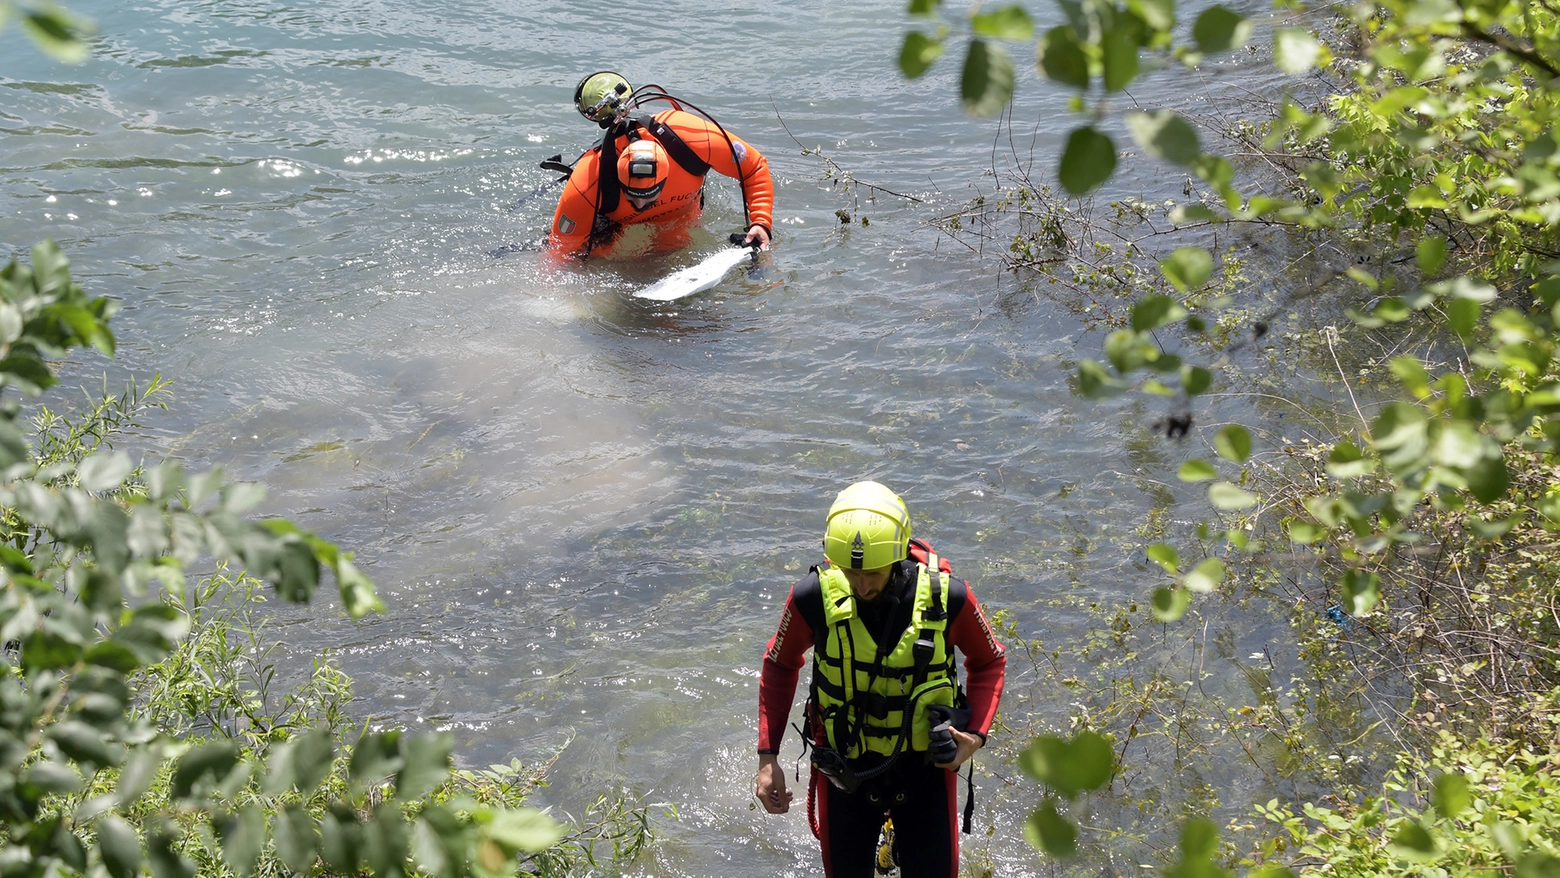 Le ricerche dei due ragazzi scomparsi nel fiume Brenta, da parte dei sommozzatori dei vigili del fuoco non hanno avuto esito